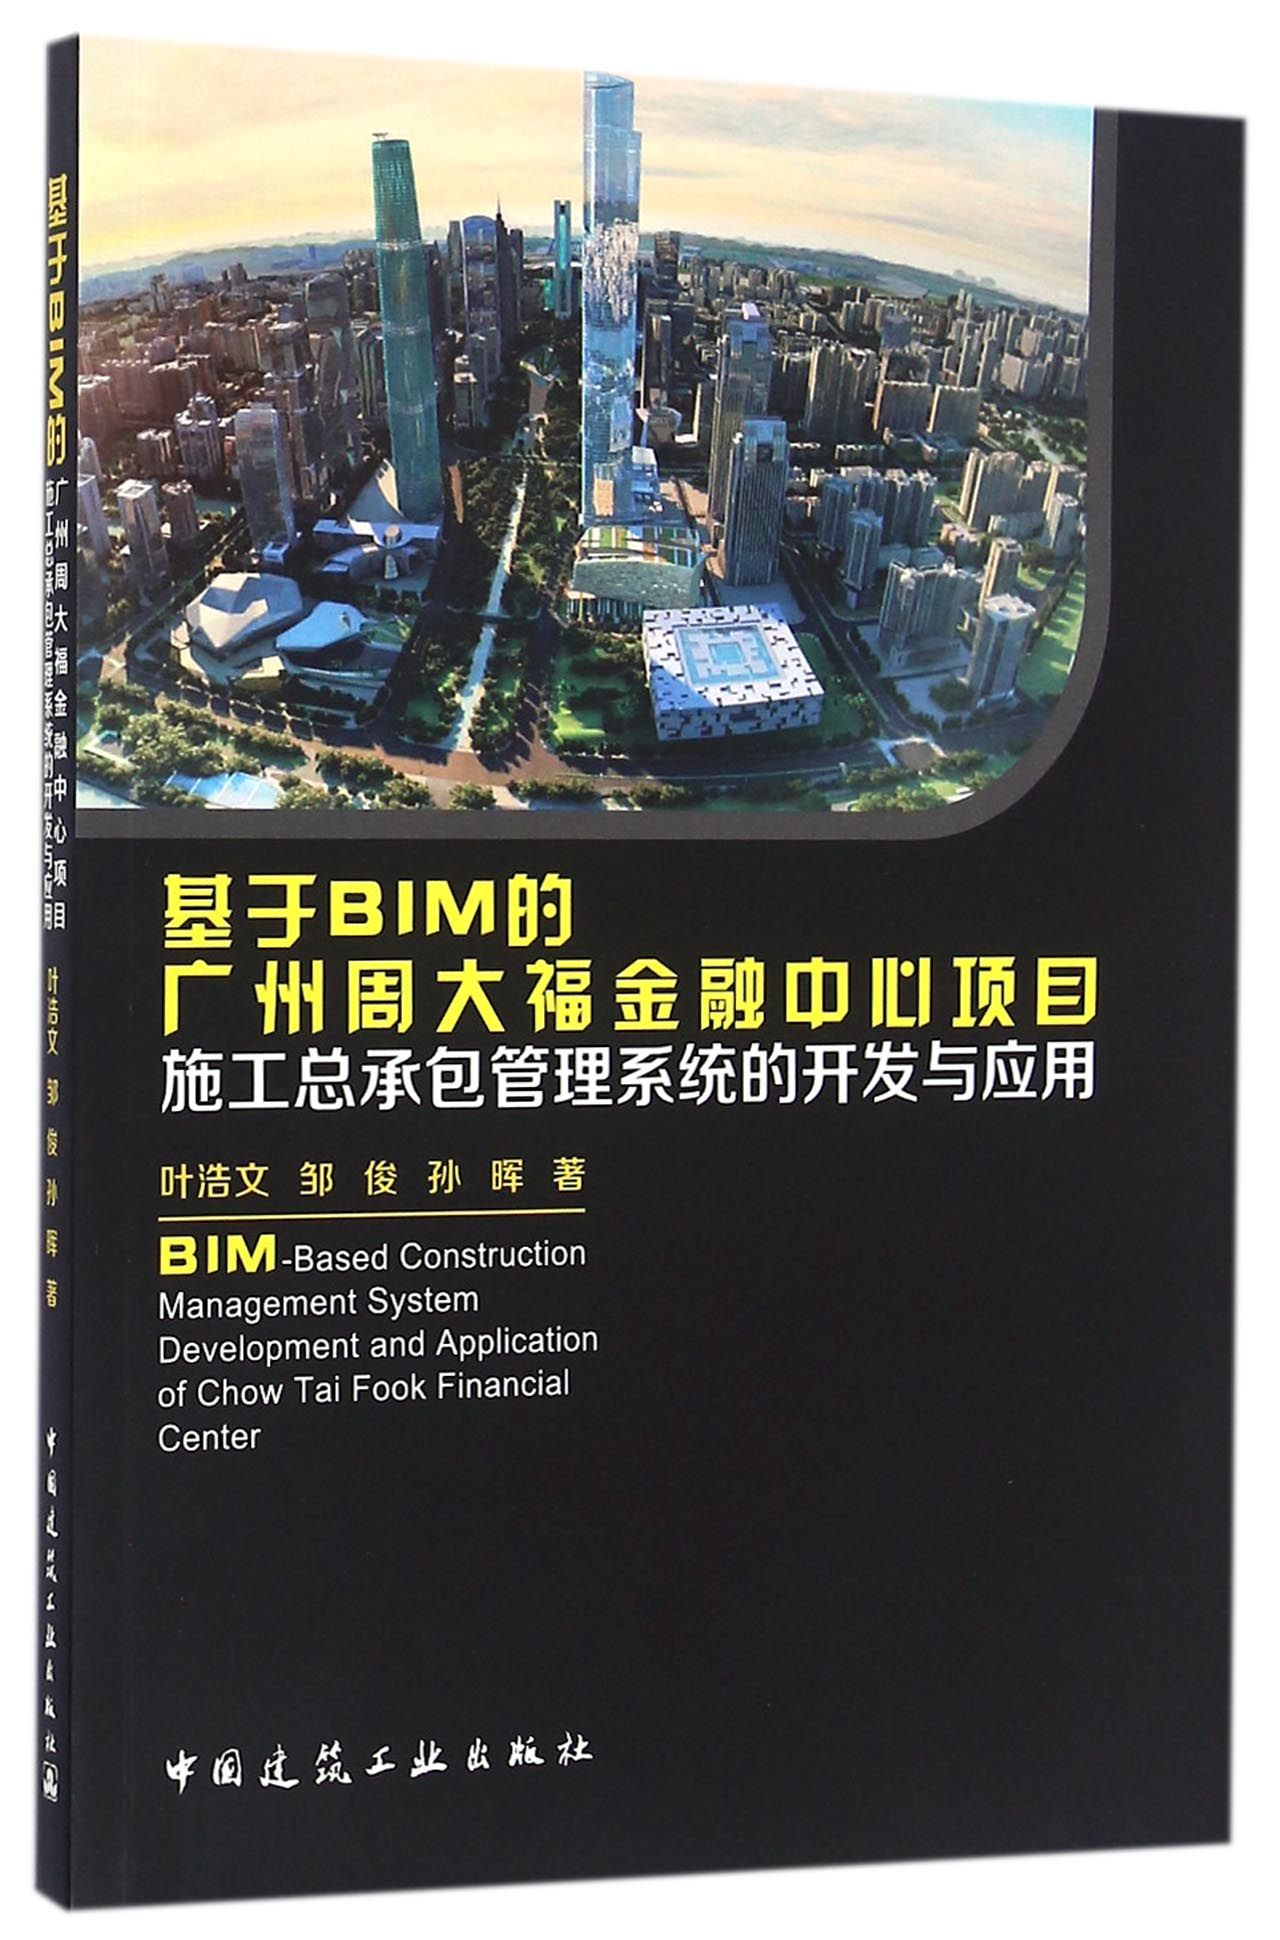 基于BIM的广州周大福金融中心项目施工总承包管理系统的开发与应用 txt格式下载